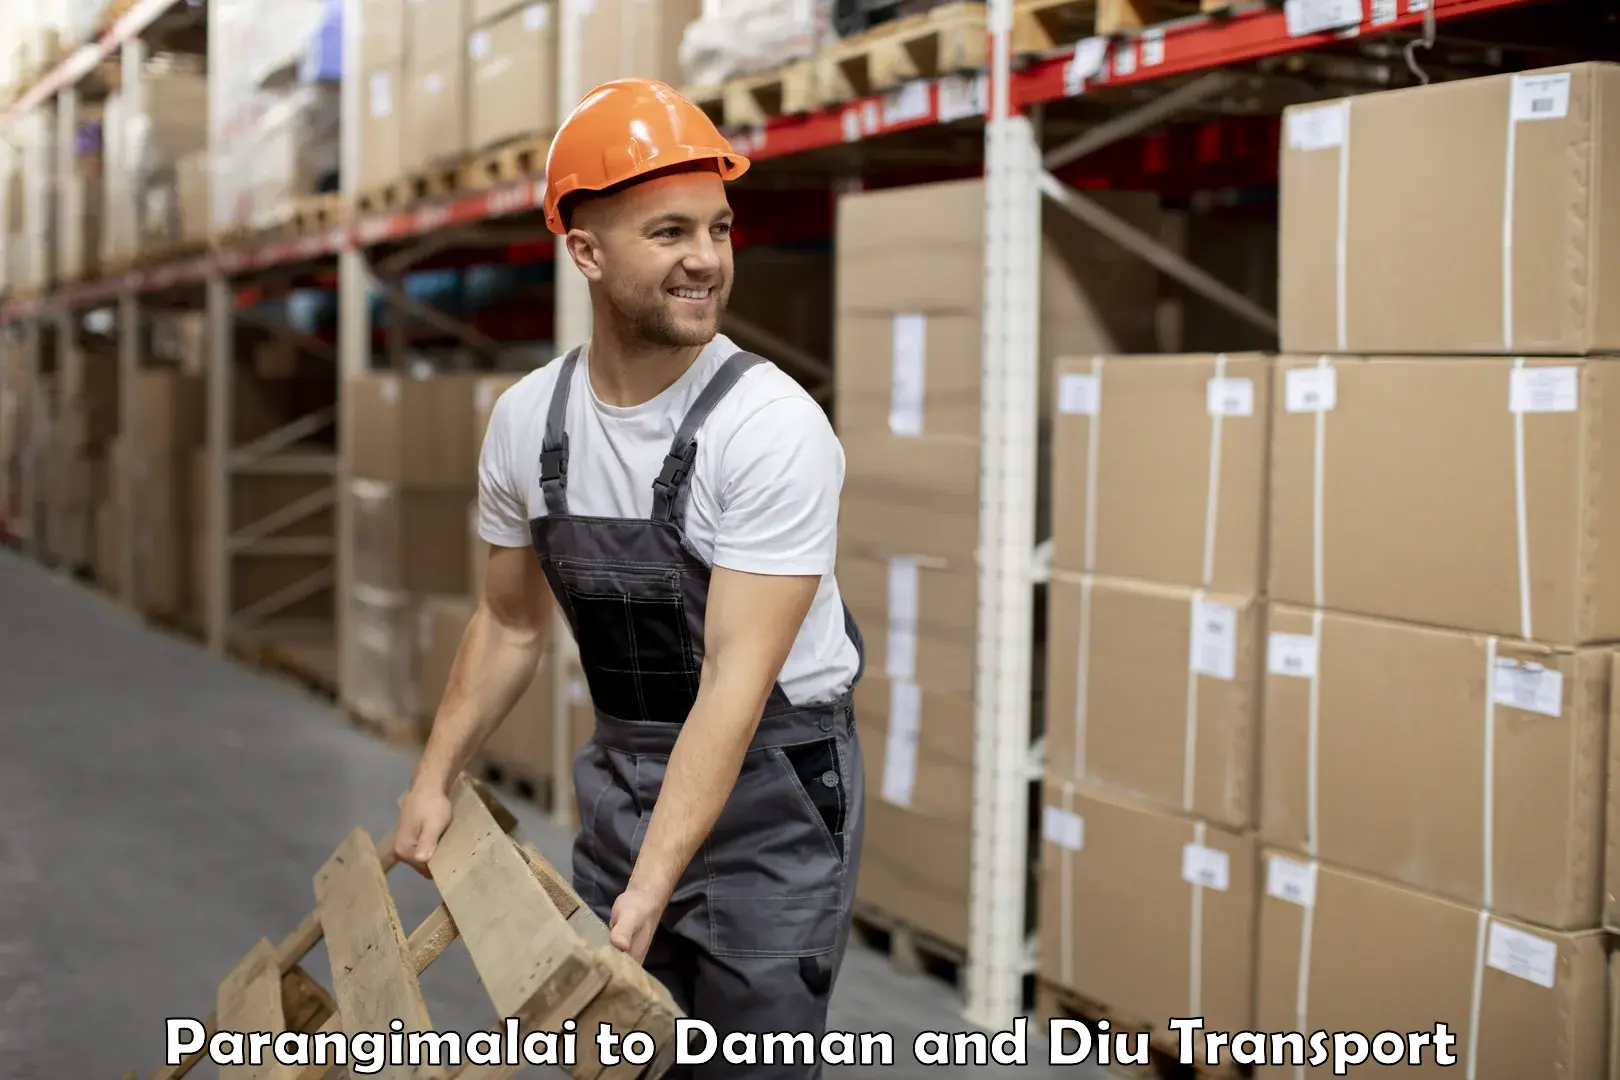 Truck transport companies in India Parangimalai to Daman and Diu